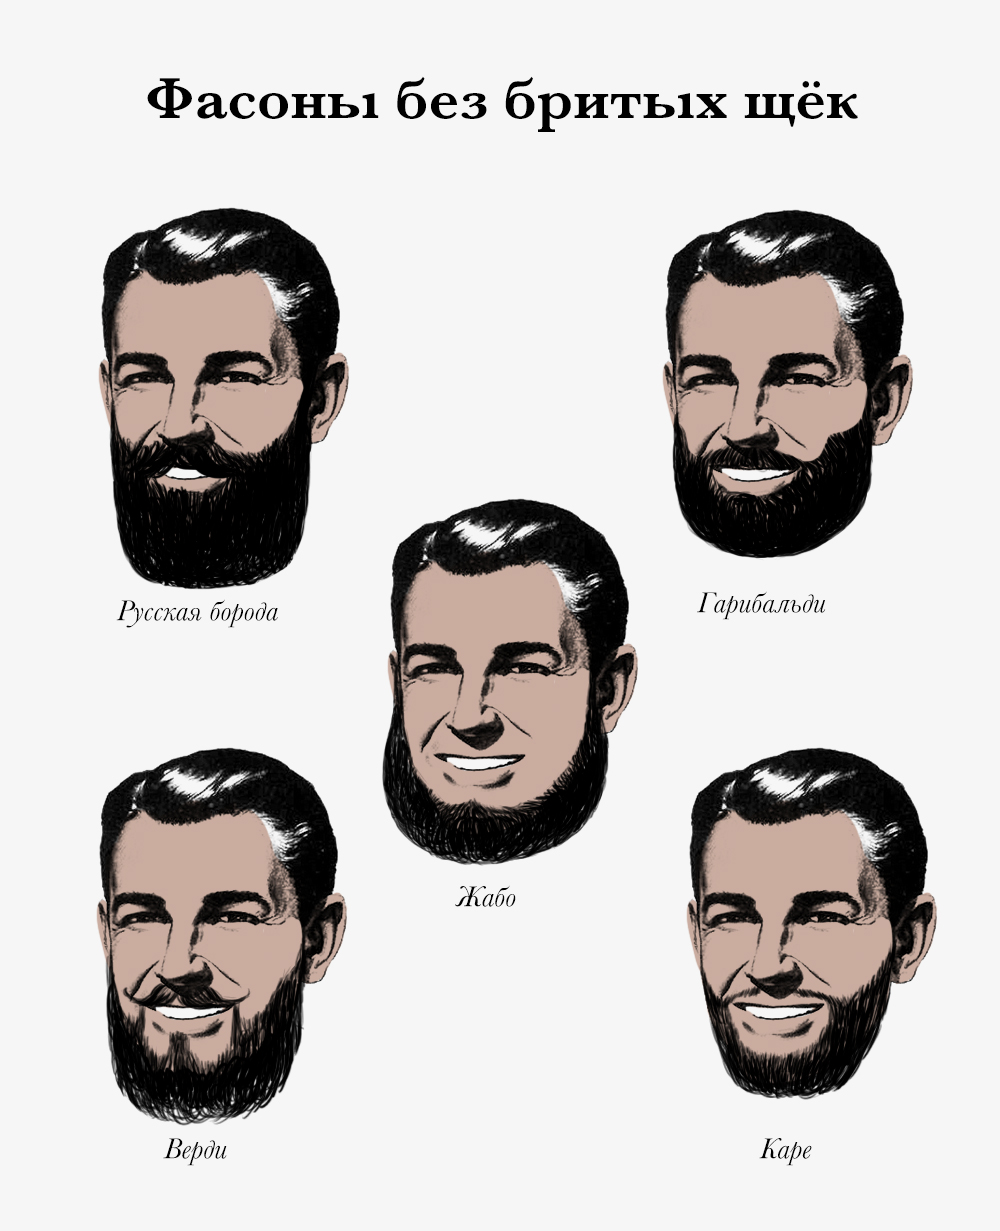 Как будет борода на грузинском